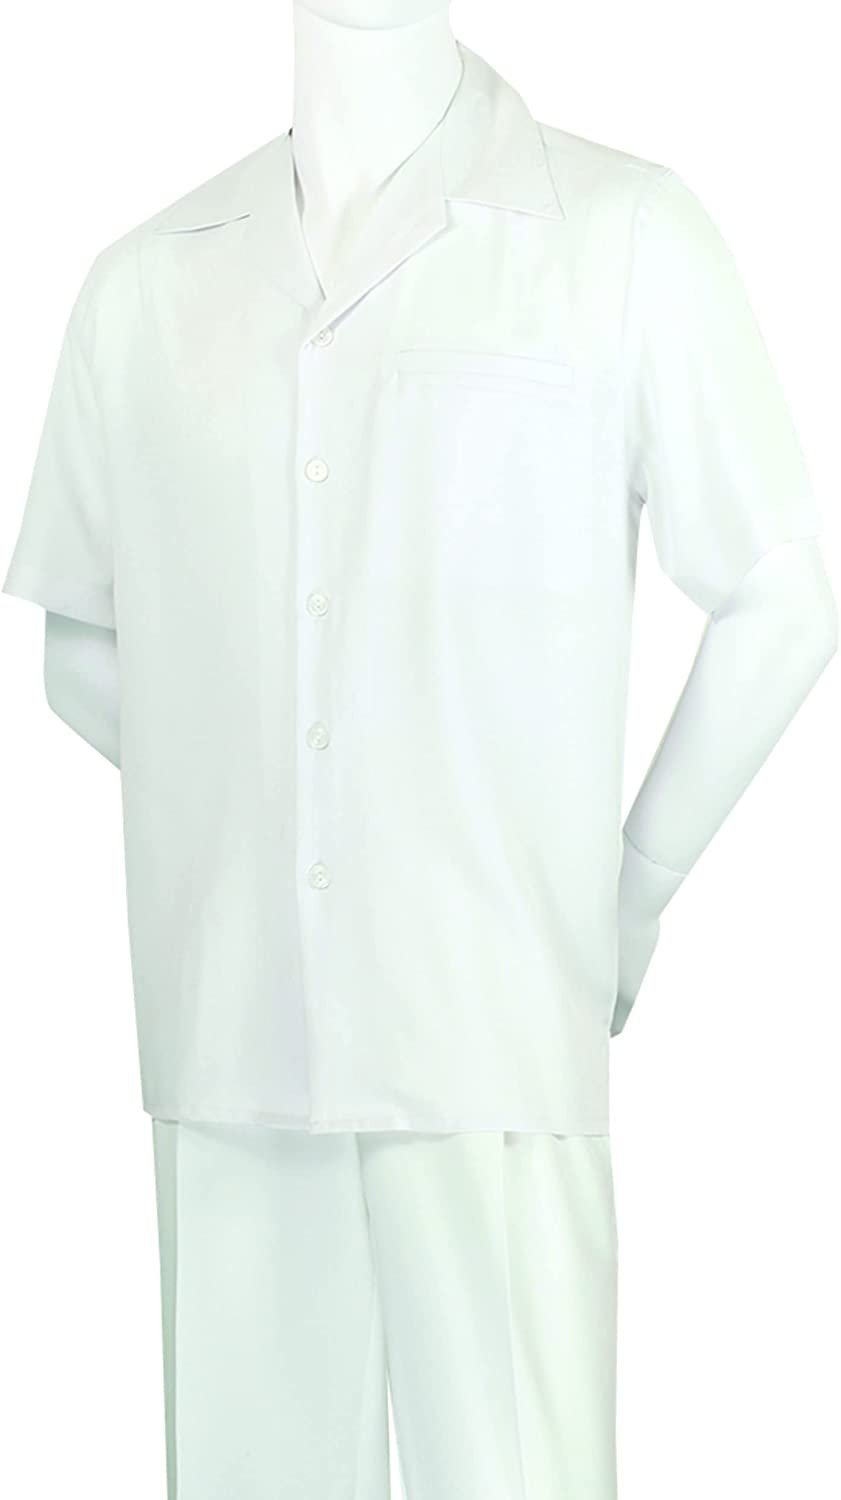 Adam Baker Men's 2-Piece (Long Pants and Short Sleeve Shirt) Linen-Cotton Blend Walking Suit Set